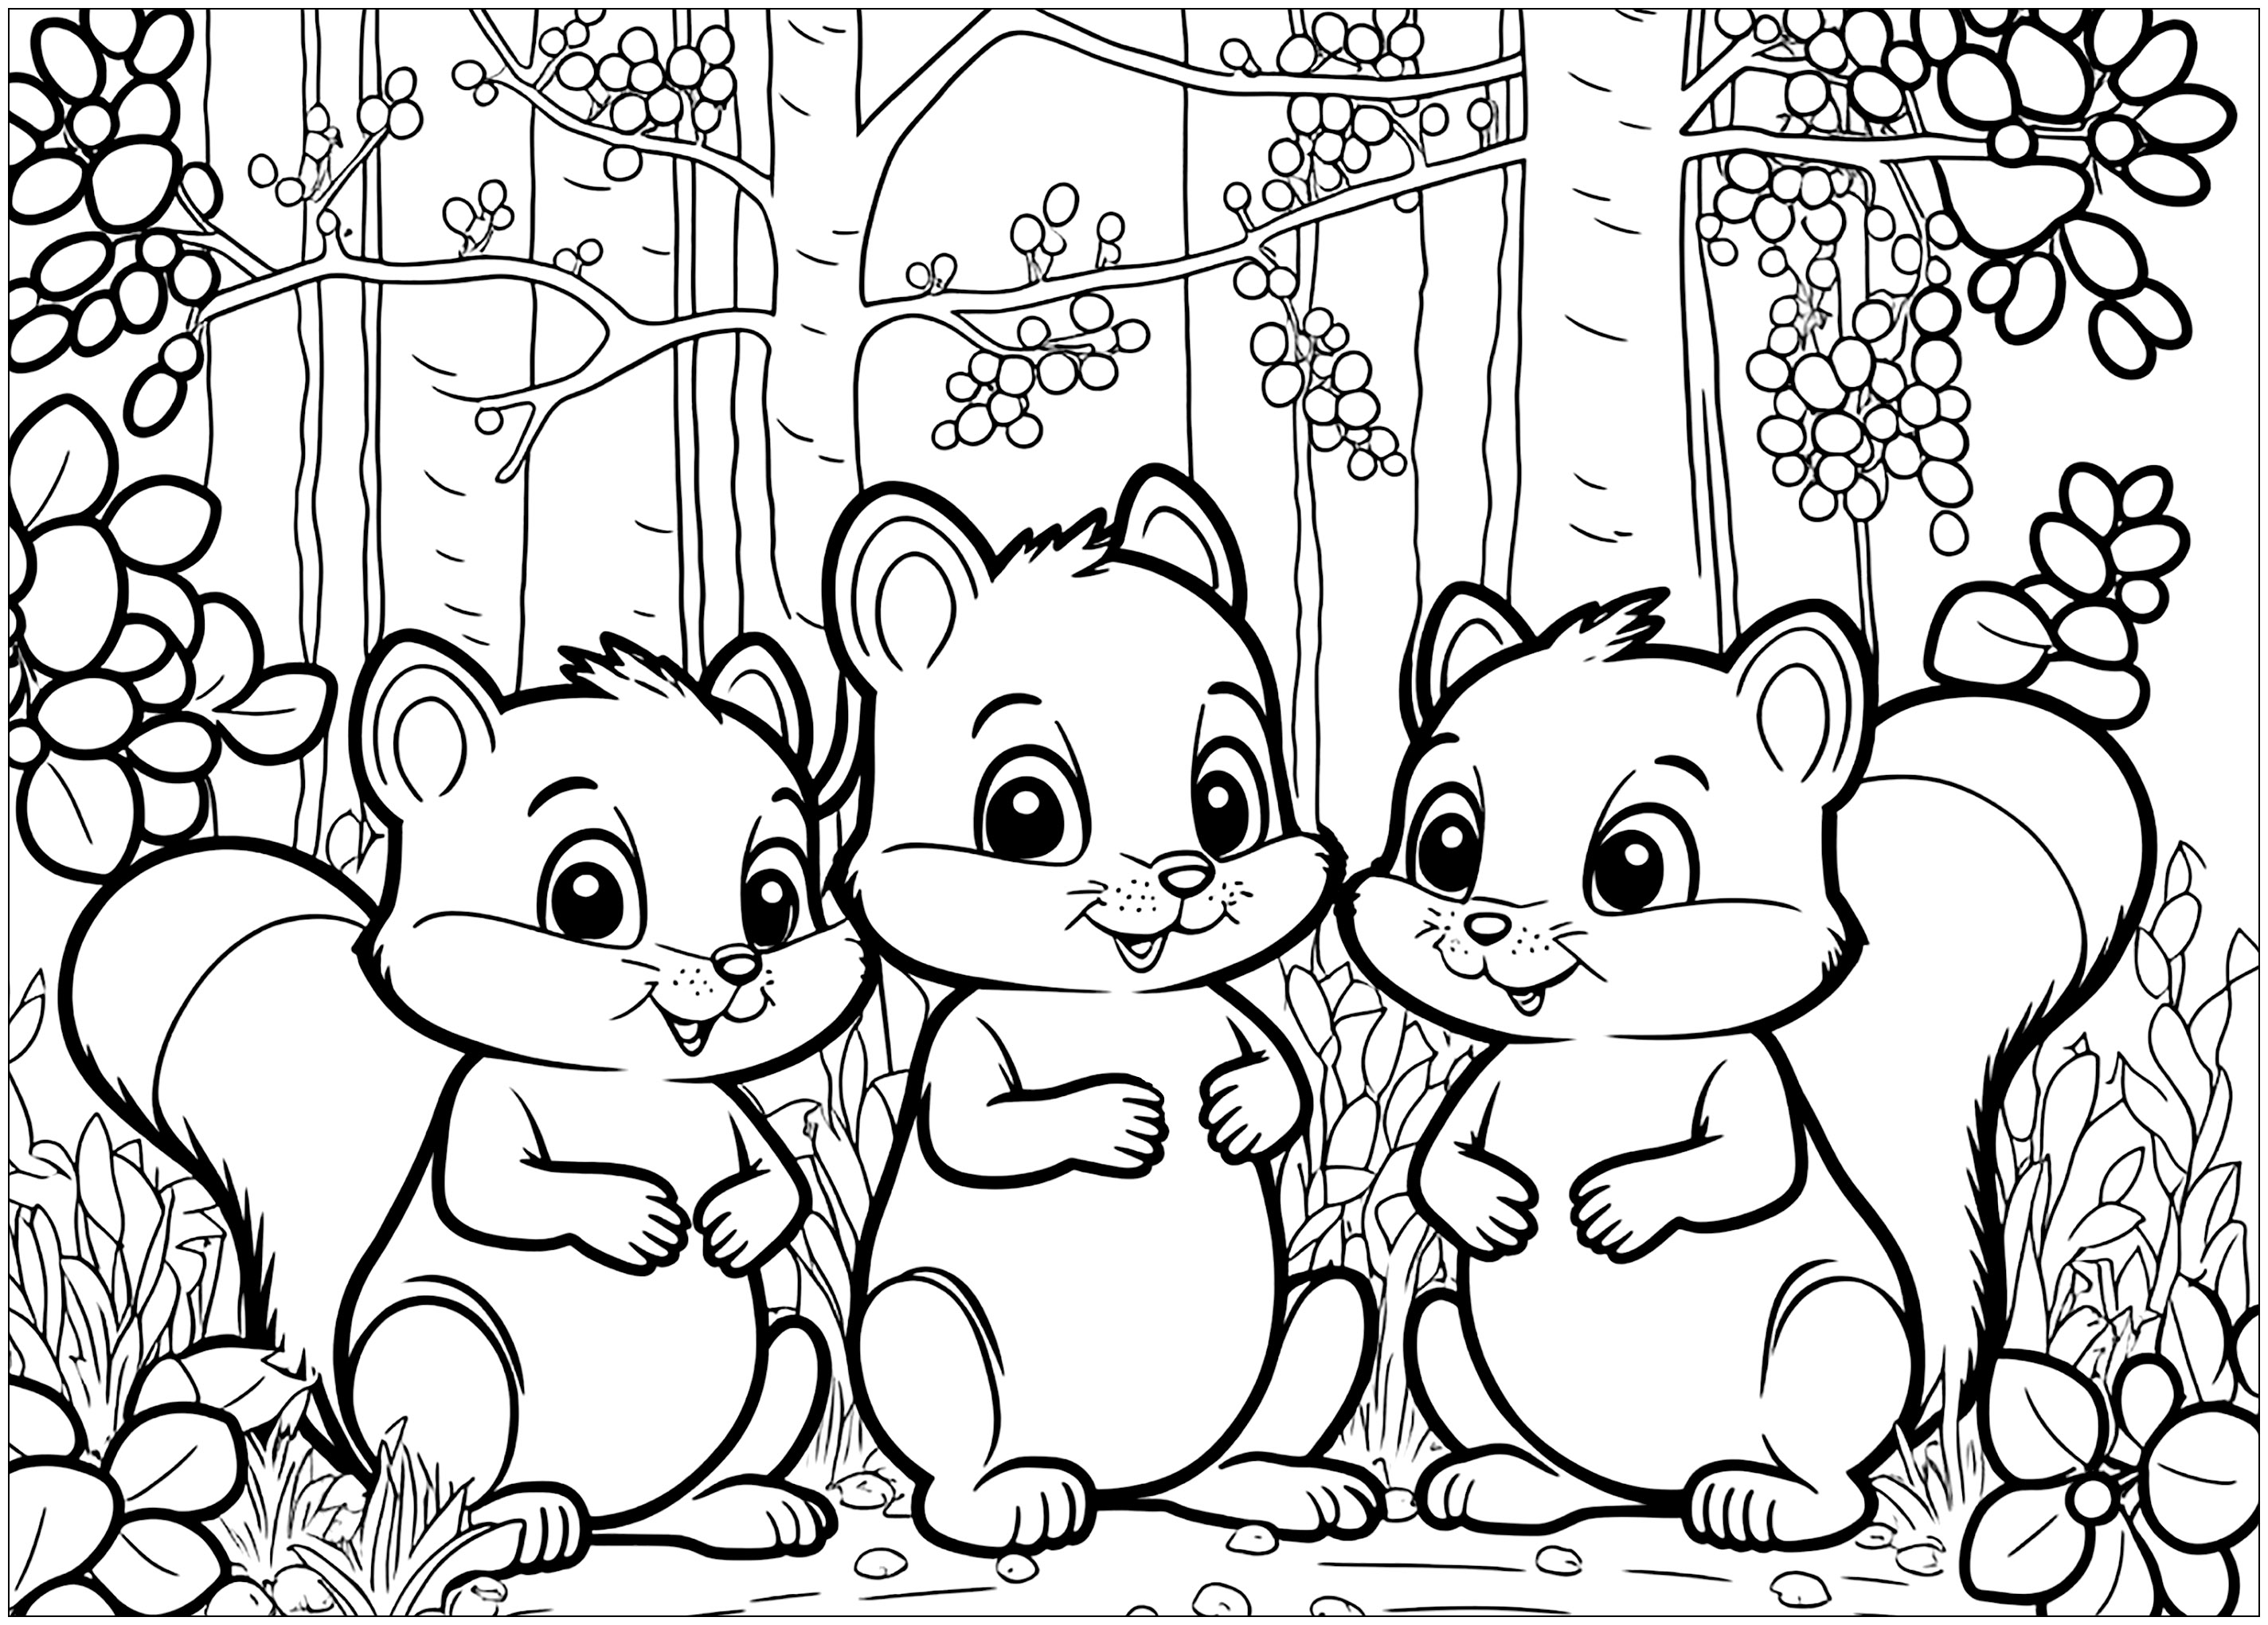 Três esquilos pequenos e giros na floresta